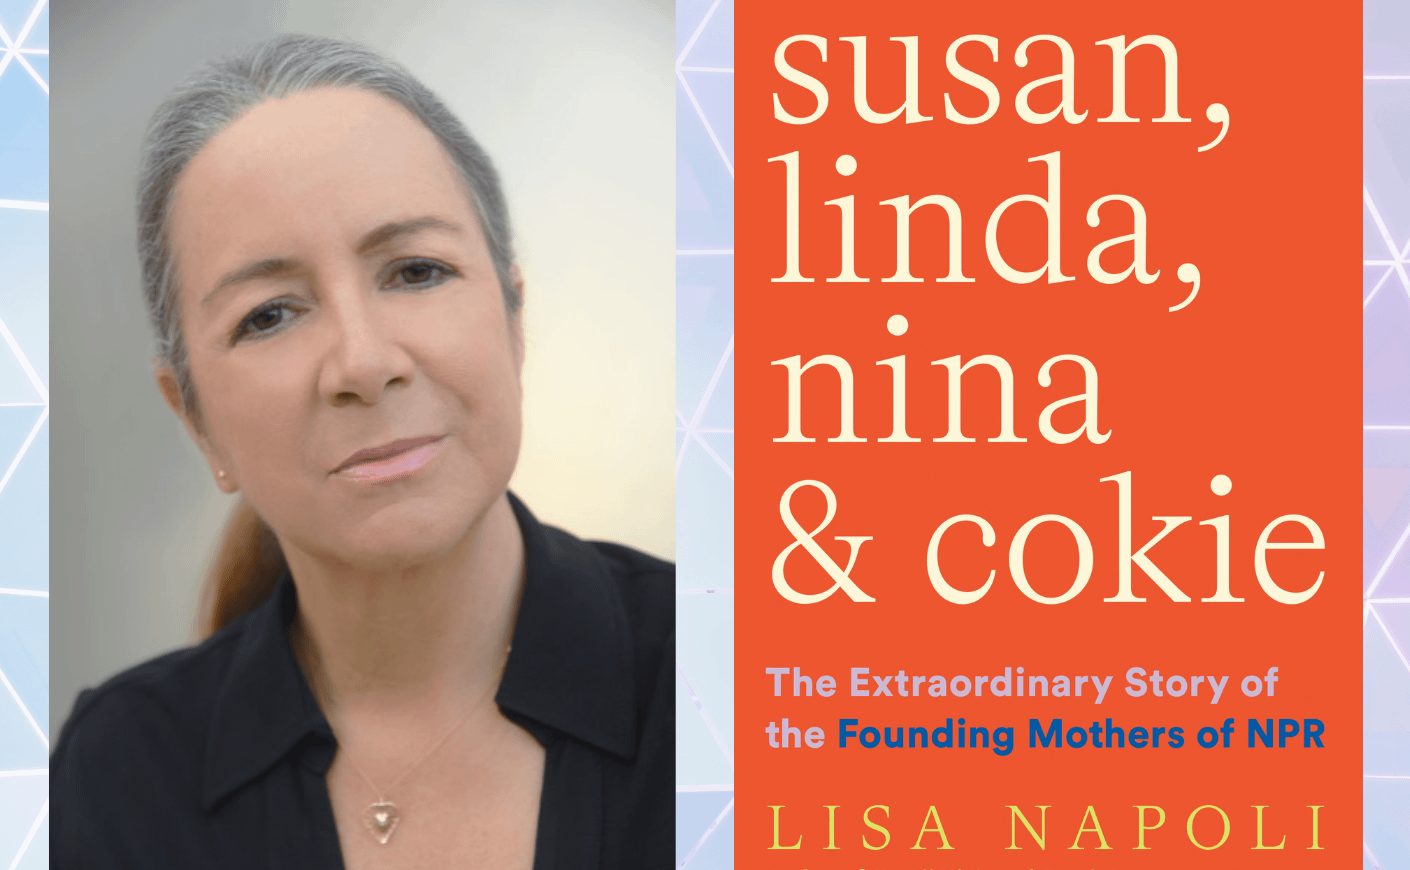 NPR founding mothers Lisa Napoli